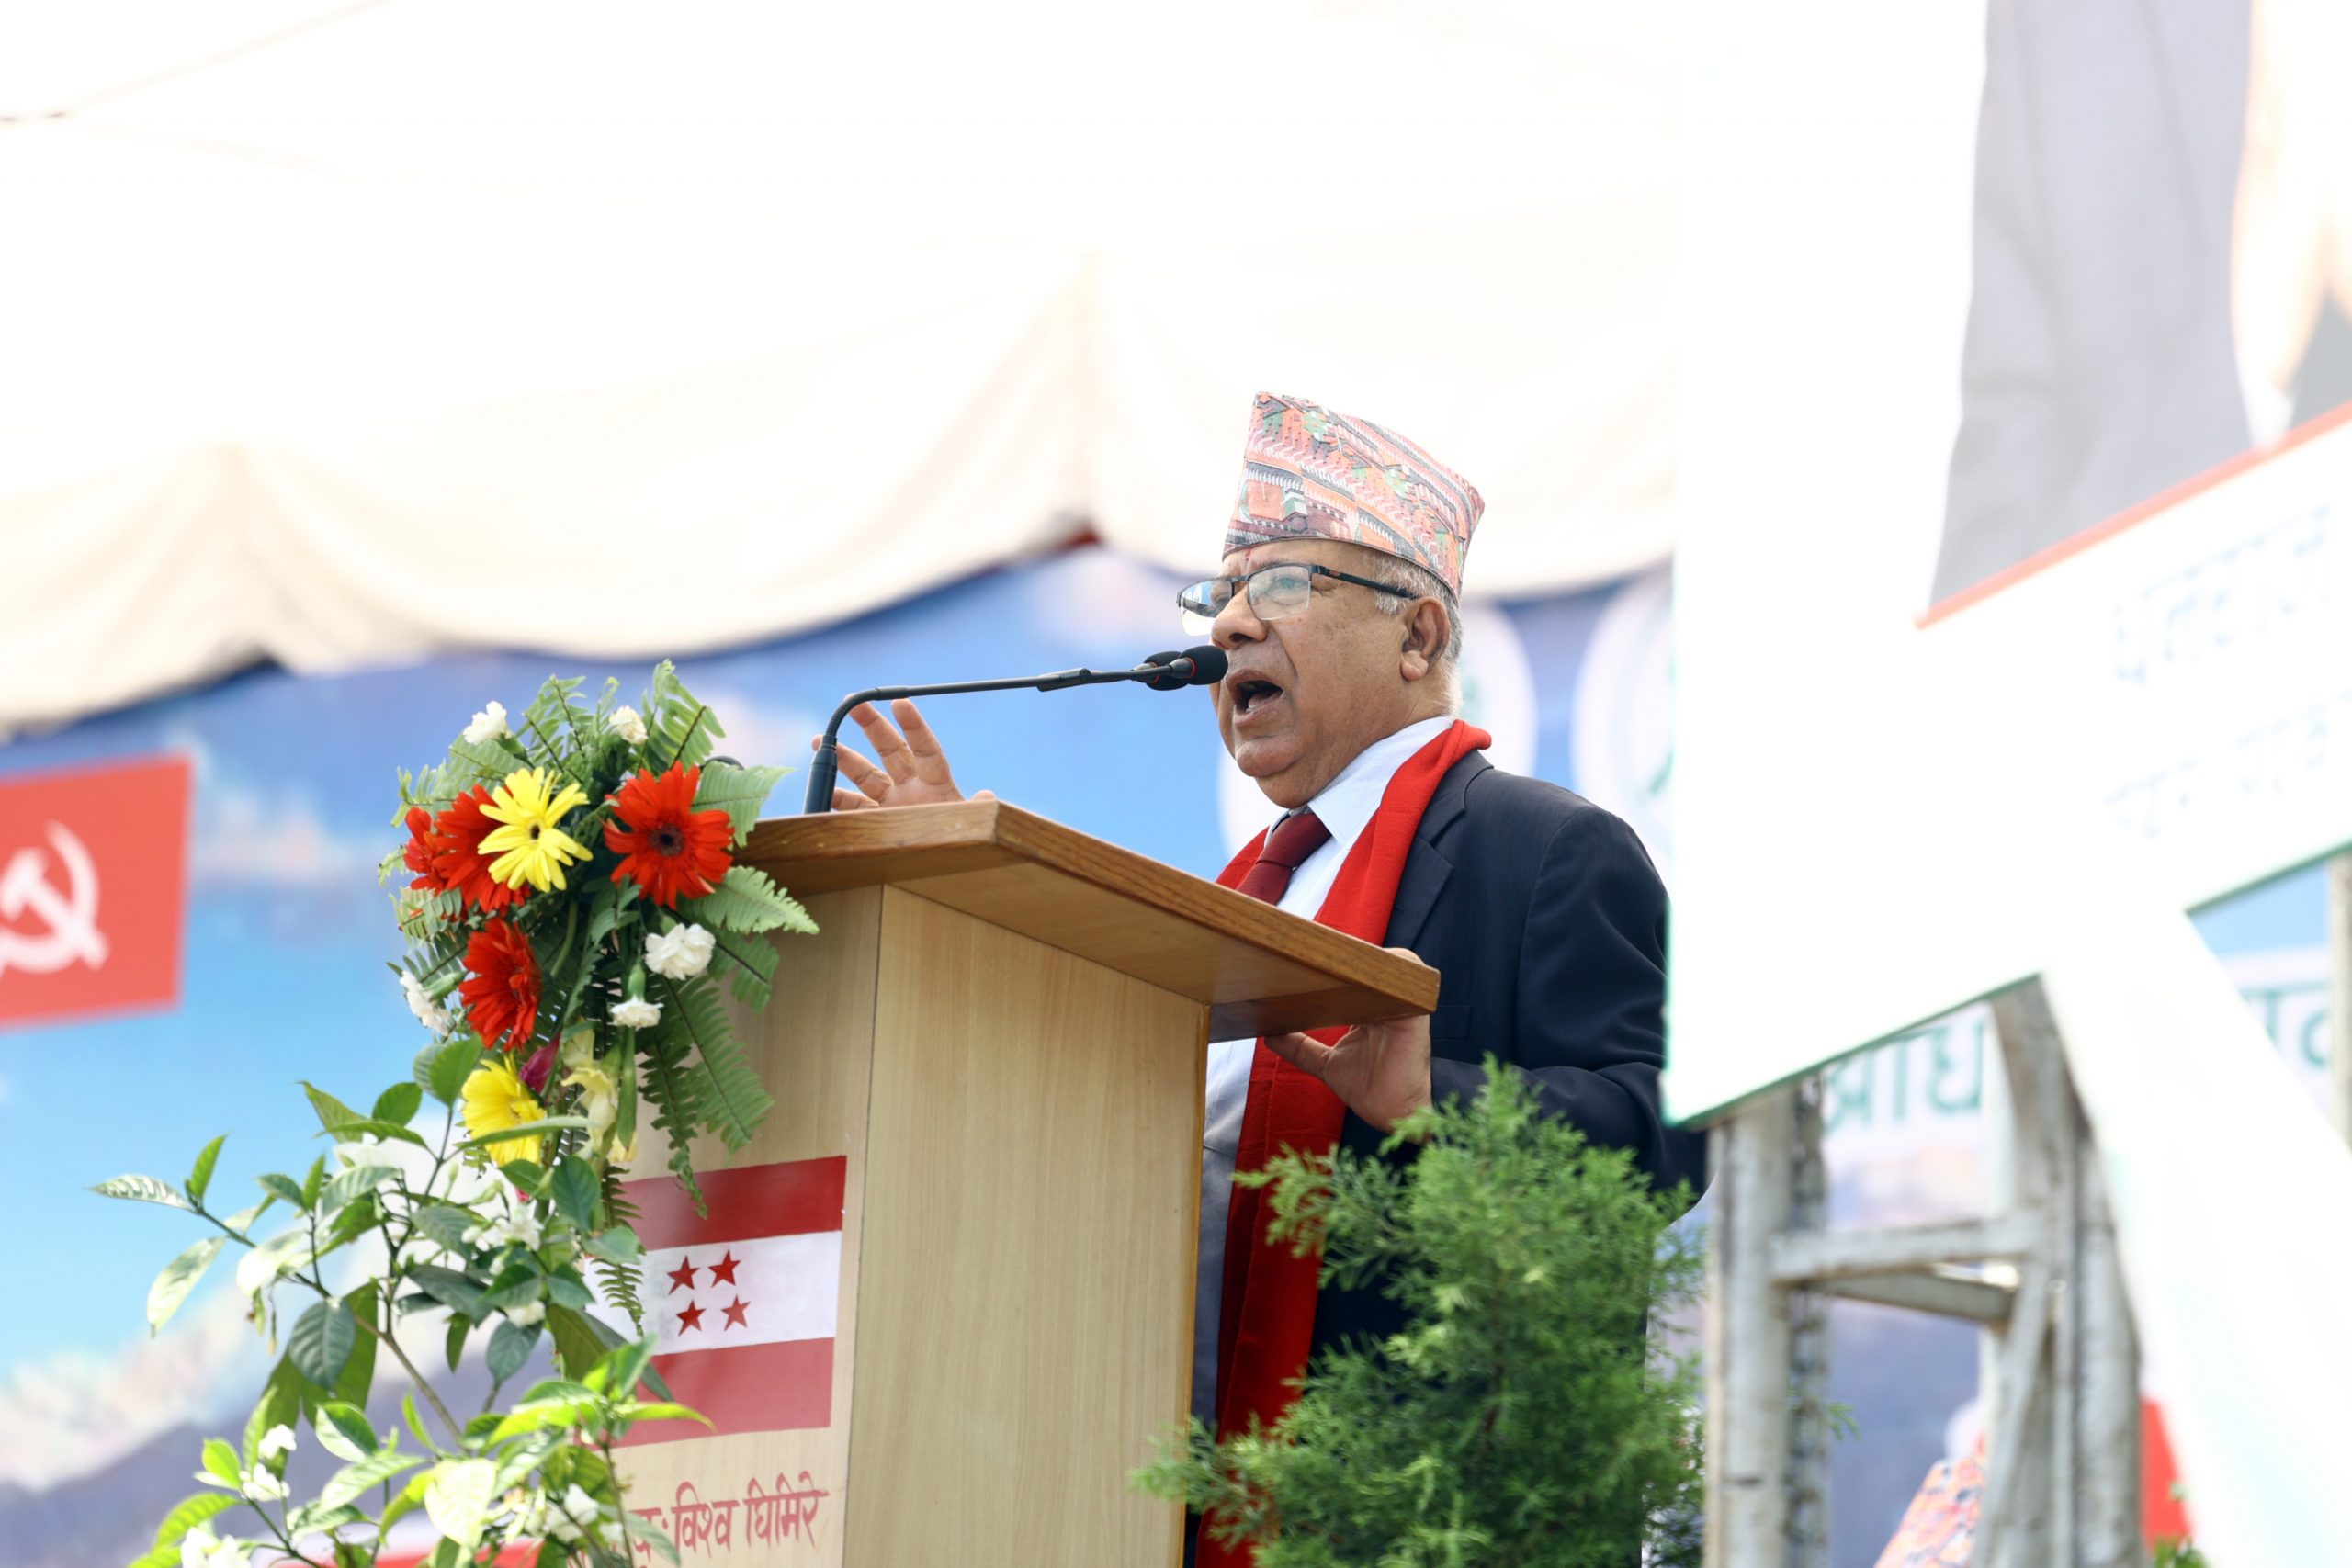 केपी ओली बयलगाढा दर्शनका प्रवर्तक, संविधानको माया छैन : नेपाल